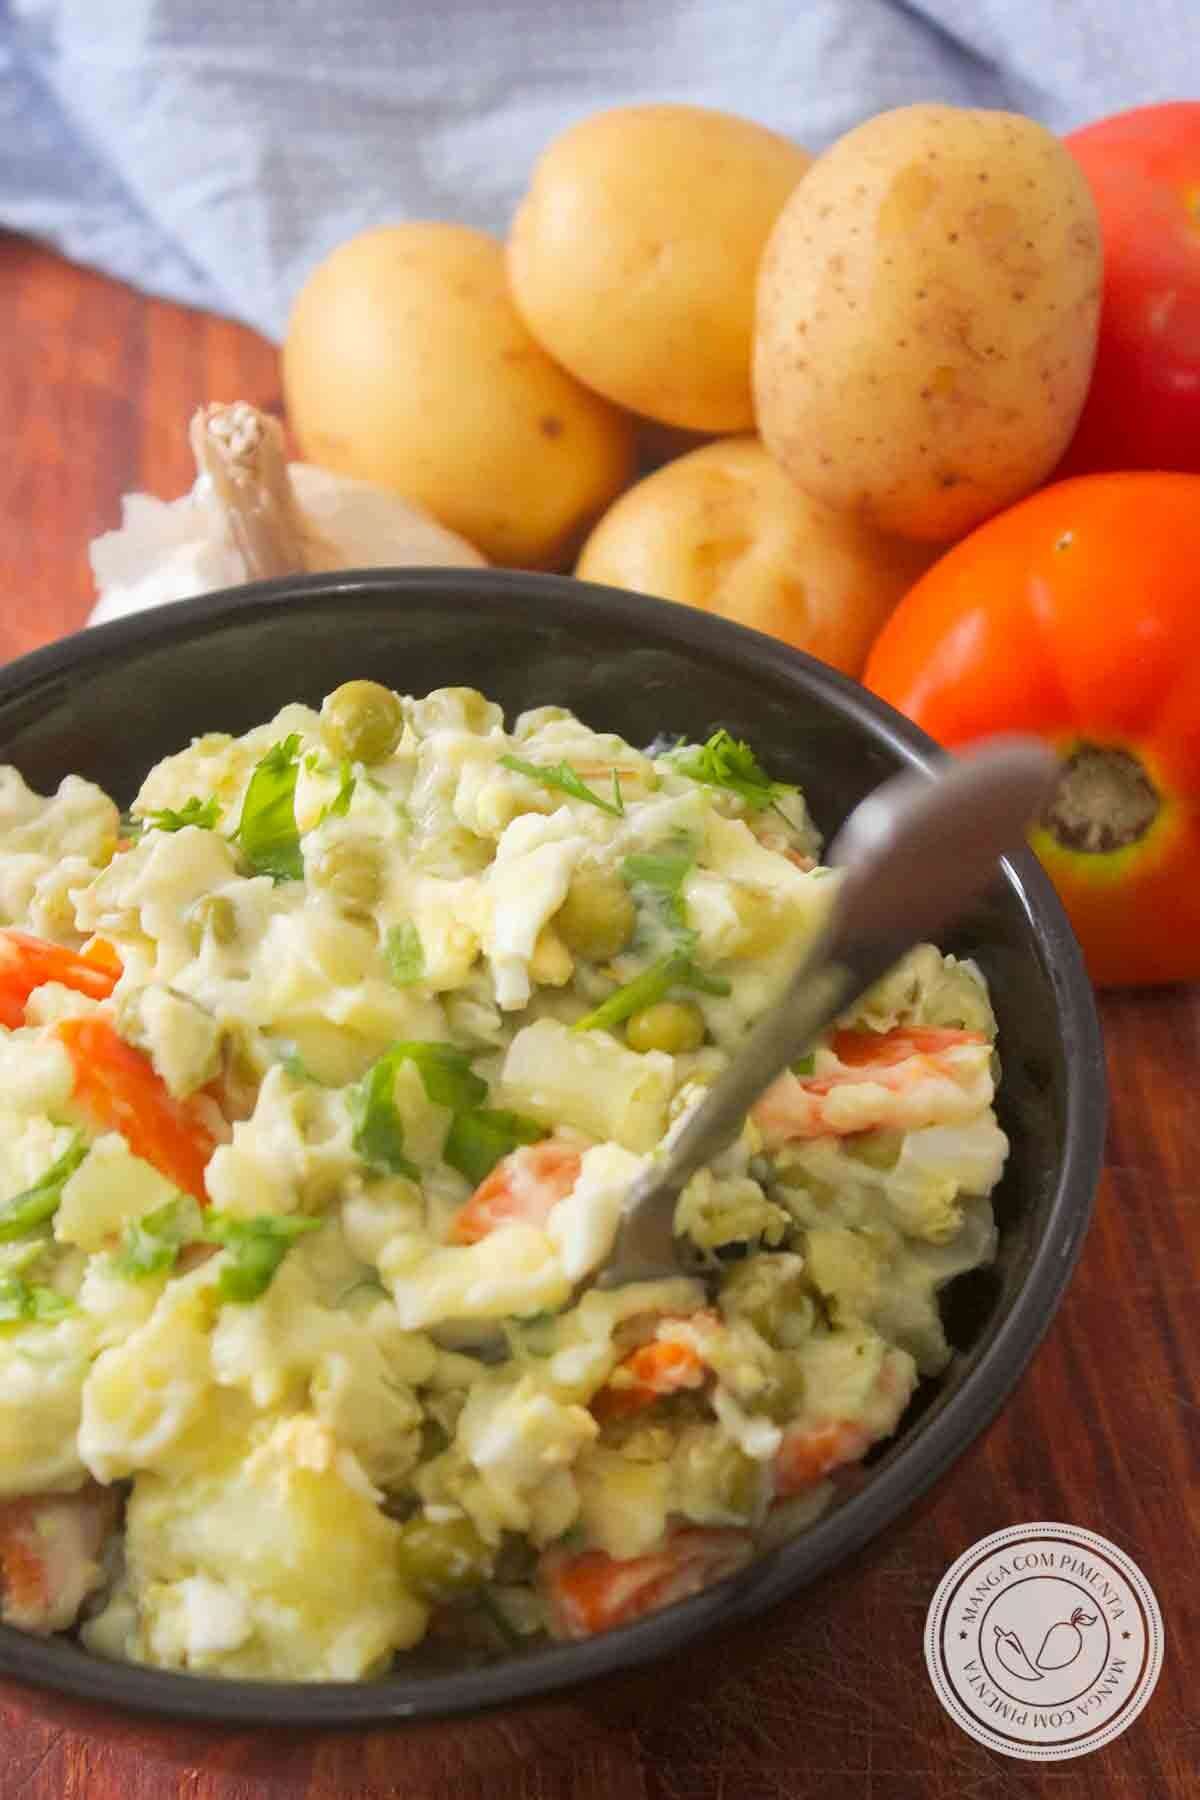 Receita de Salada de Maionese ou Salada Russa - um clássico para o almoço da semana ou churrasco do final de semana.